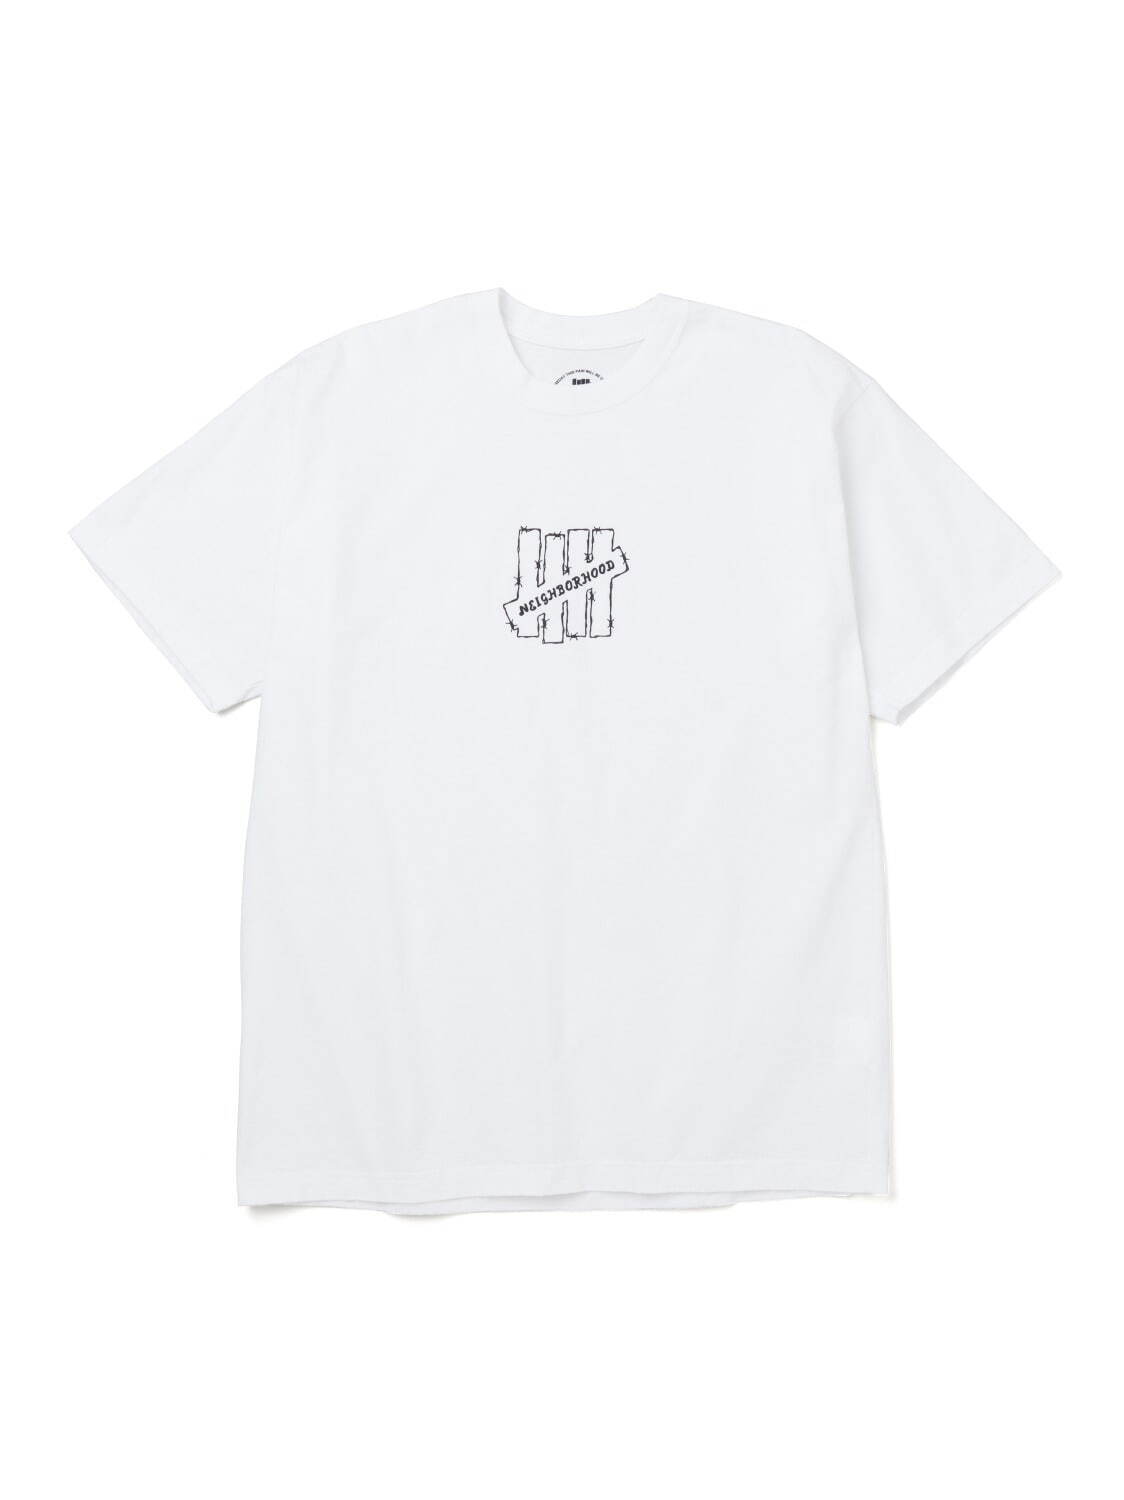 Tシャツ 8,800円(税込)